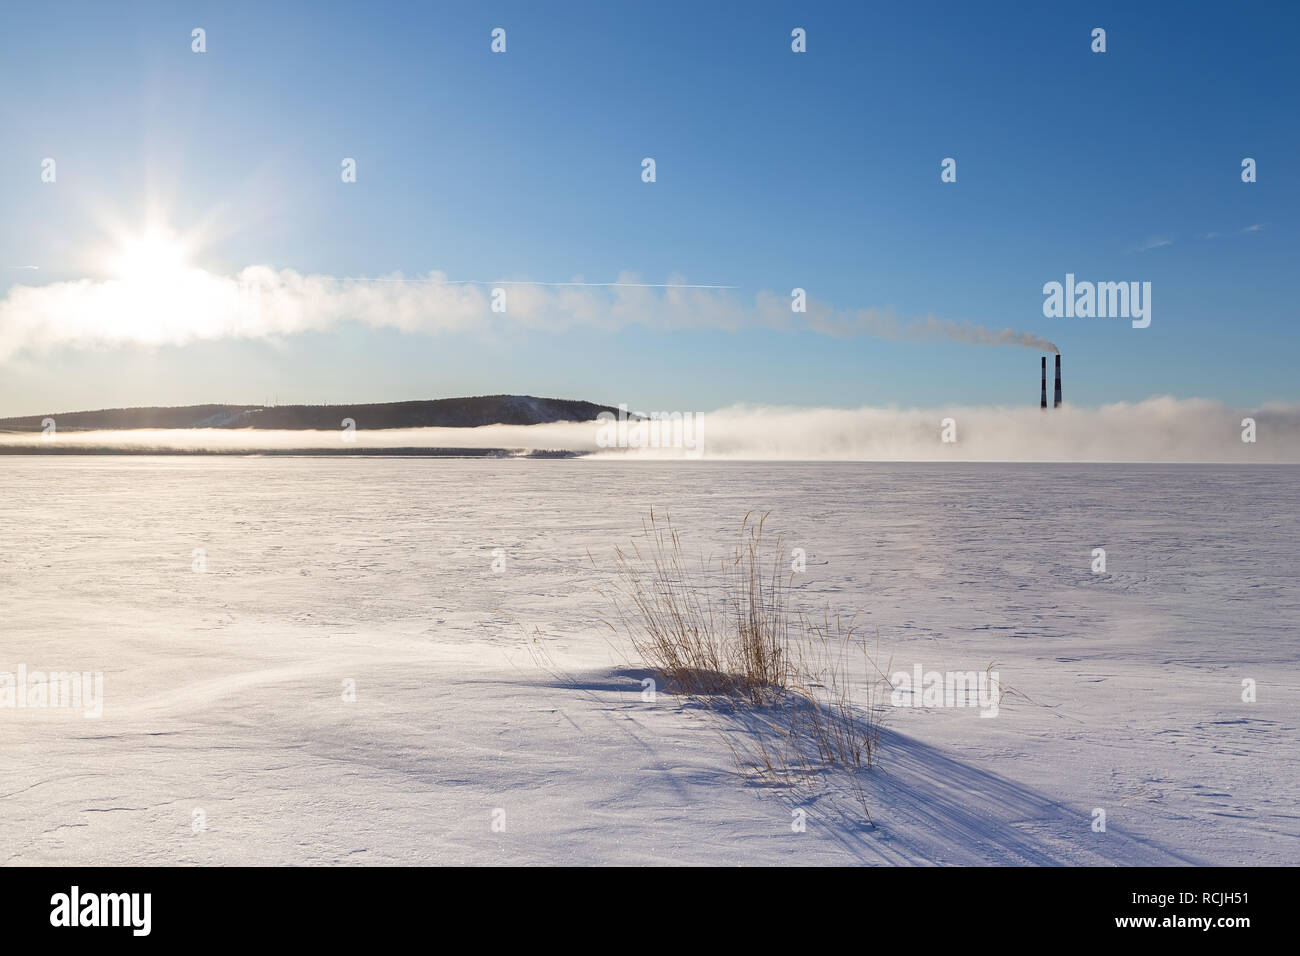 Panorama d'un lac gelé avec cheminées fumer dans le brouillard, le soleil et la piste de l'avion. Banque D'Images